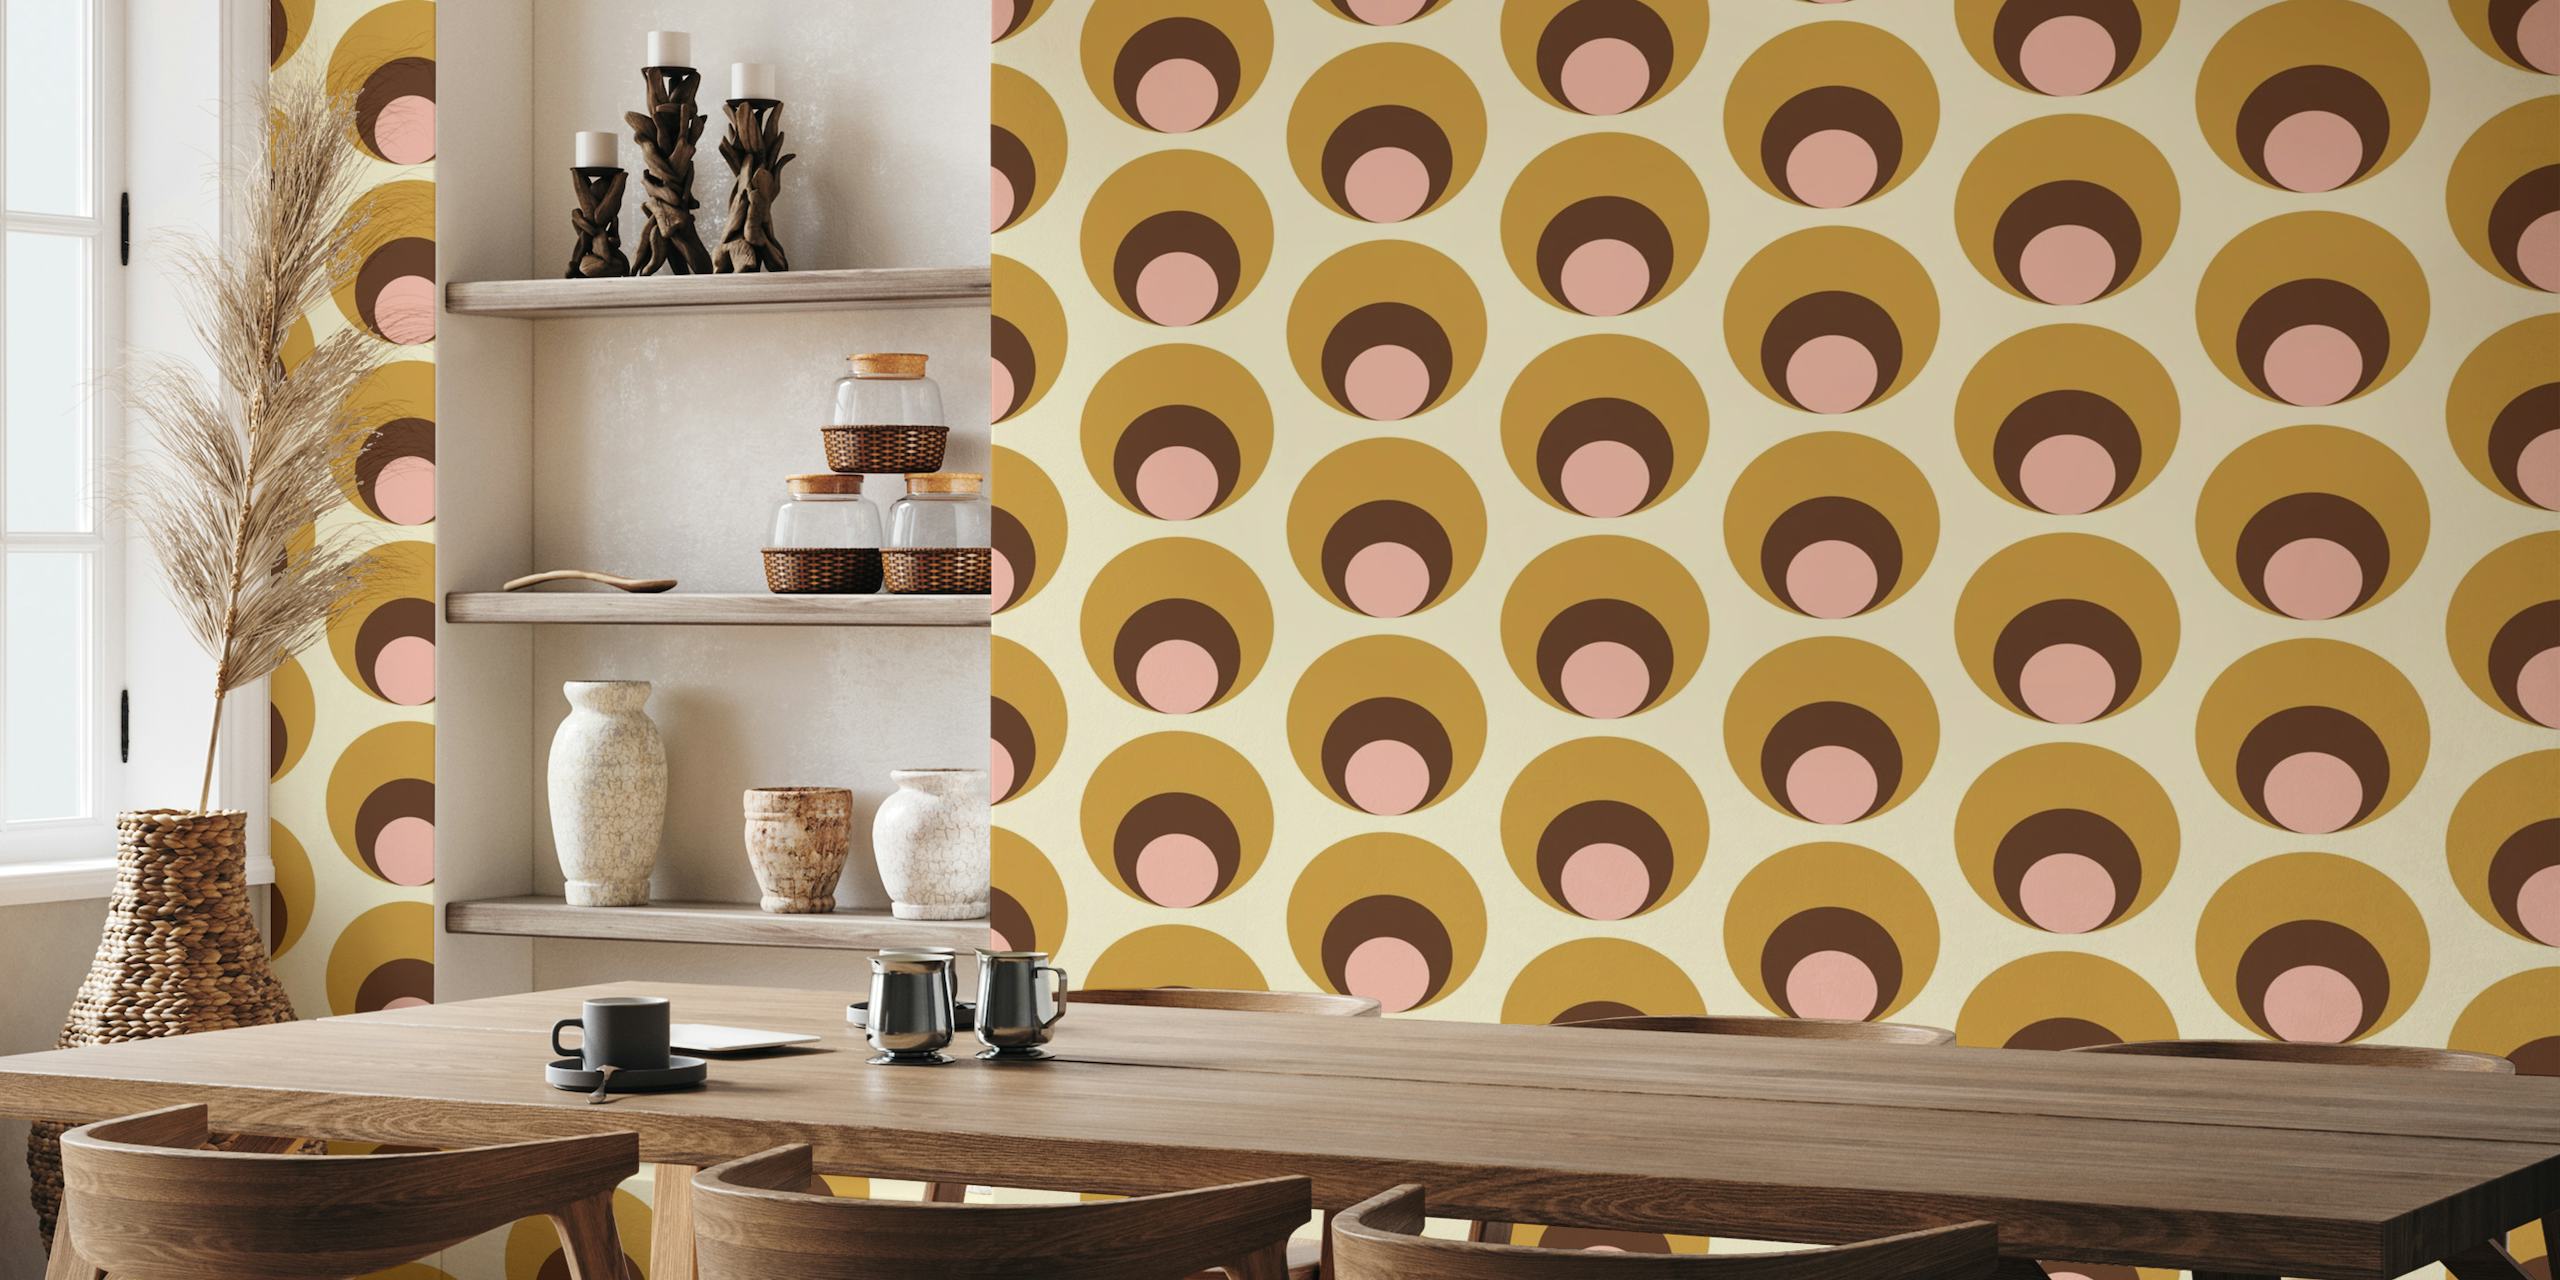 Mural de parede Apricity Retro Dots Beige com círculos sobrepostos em tons de bege, cinza e blush.